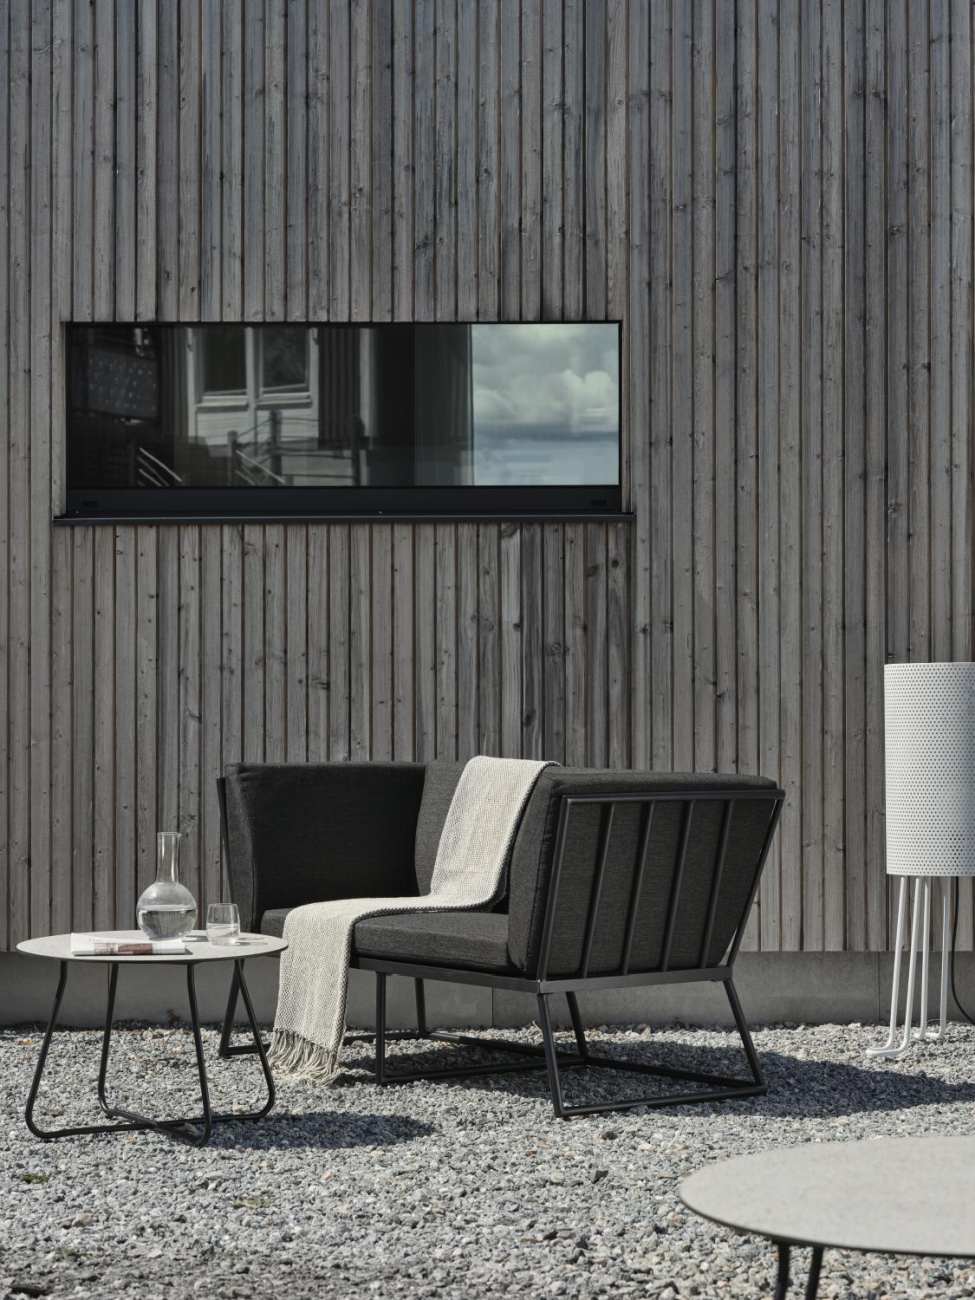 Das Gartensofa Vence überzeugt mit seinem modernen Design. Gefertigt wurde er aus Stoff, welcher einen dunkelgrauen Farbton besitzt. Das Gestell ist aus Metall und hat eine schwarze Farbe. Die Sitzhöhe des Sofas beträgt 43 cm.